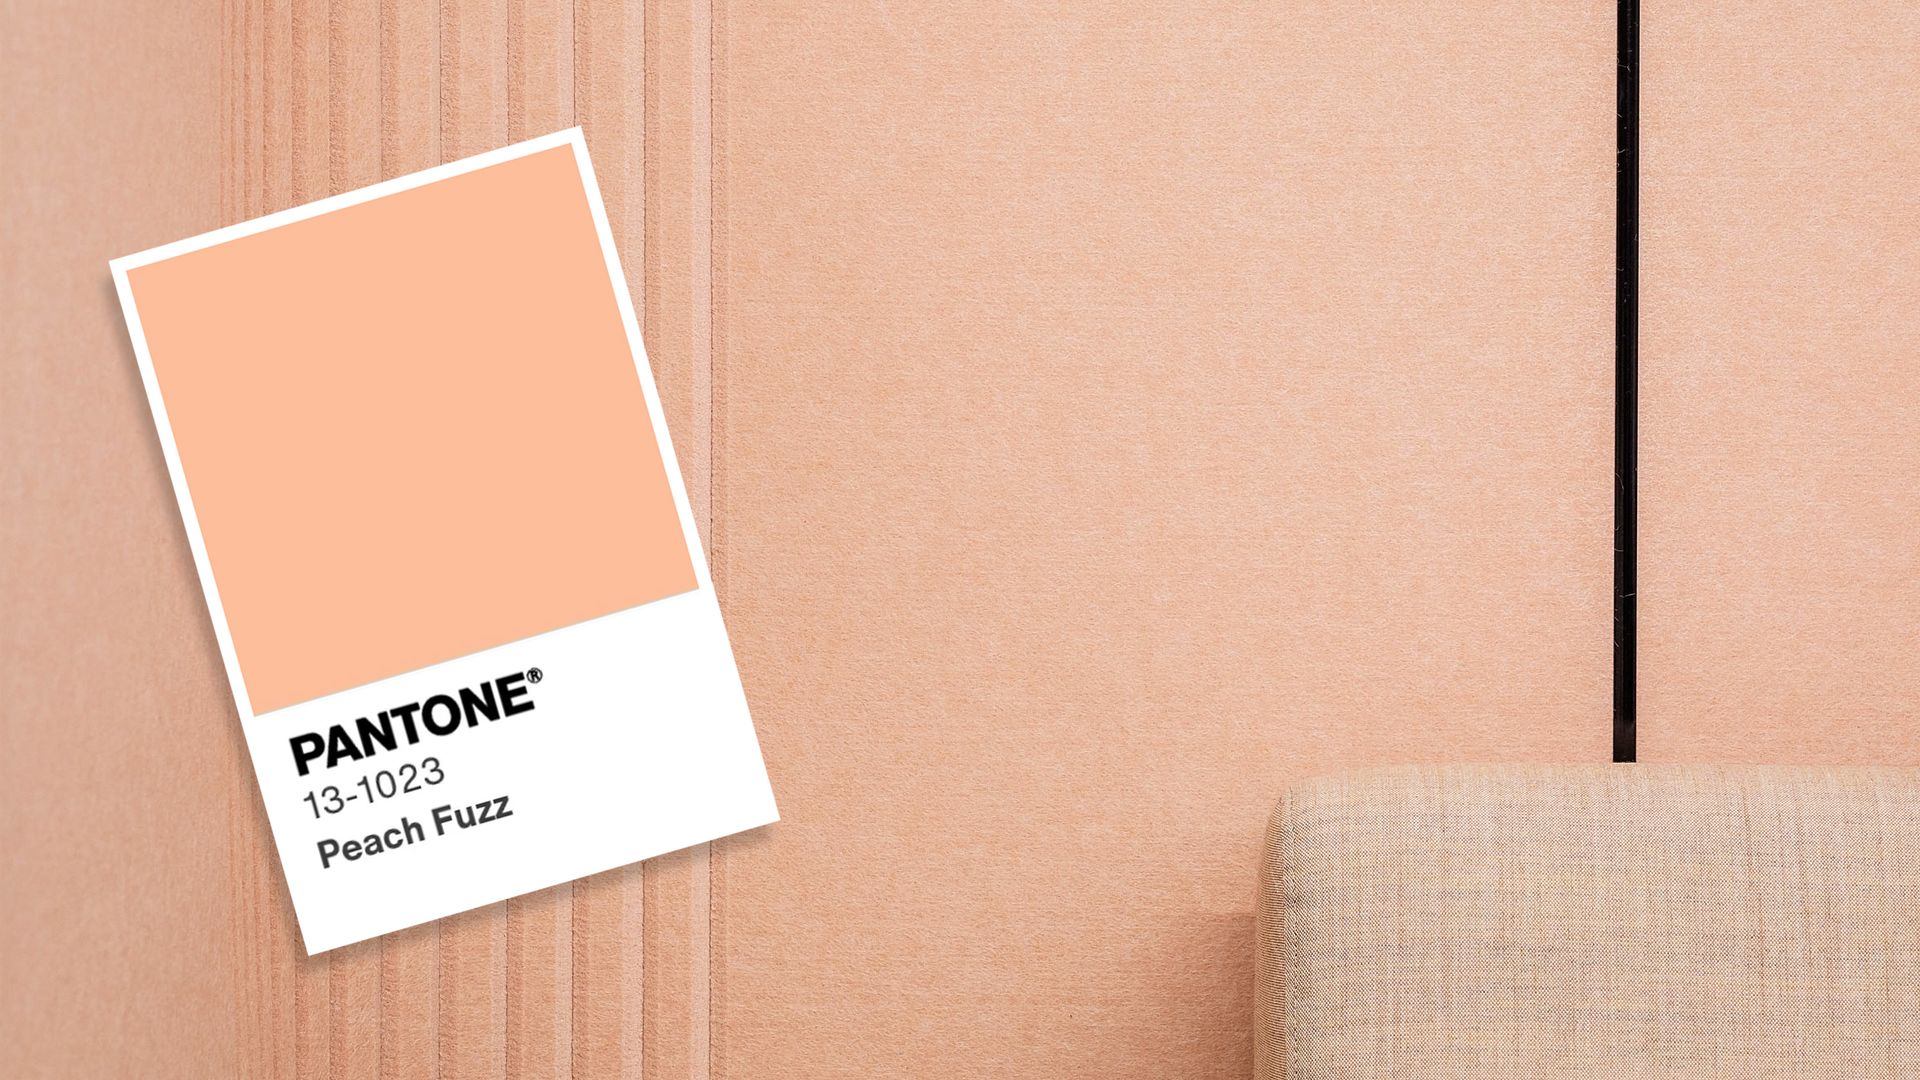 Pantone 'peach fuzz' card on a peach wallpaper. 